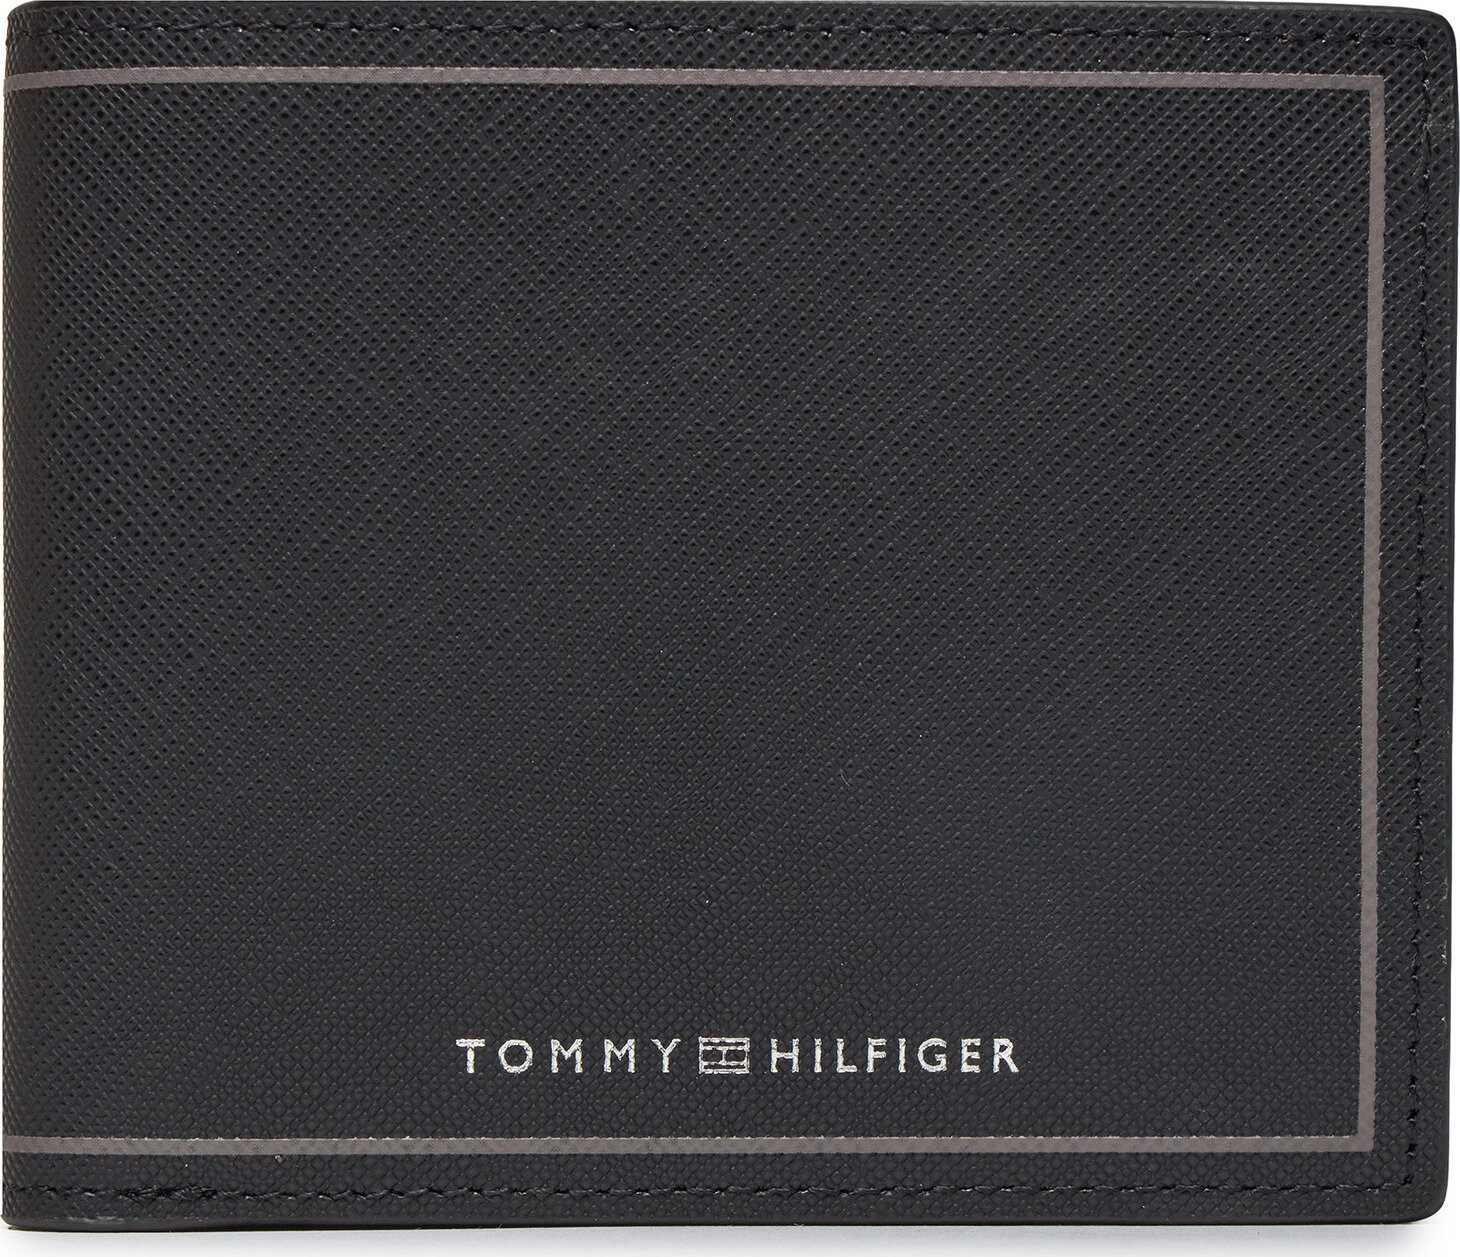 Velká pánská peněženka Tommy Hilfiger Th Saffiano Cc And Coin AM0AM11859 Black BDS